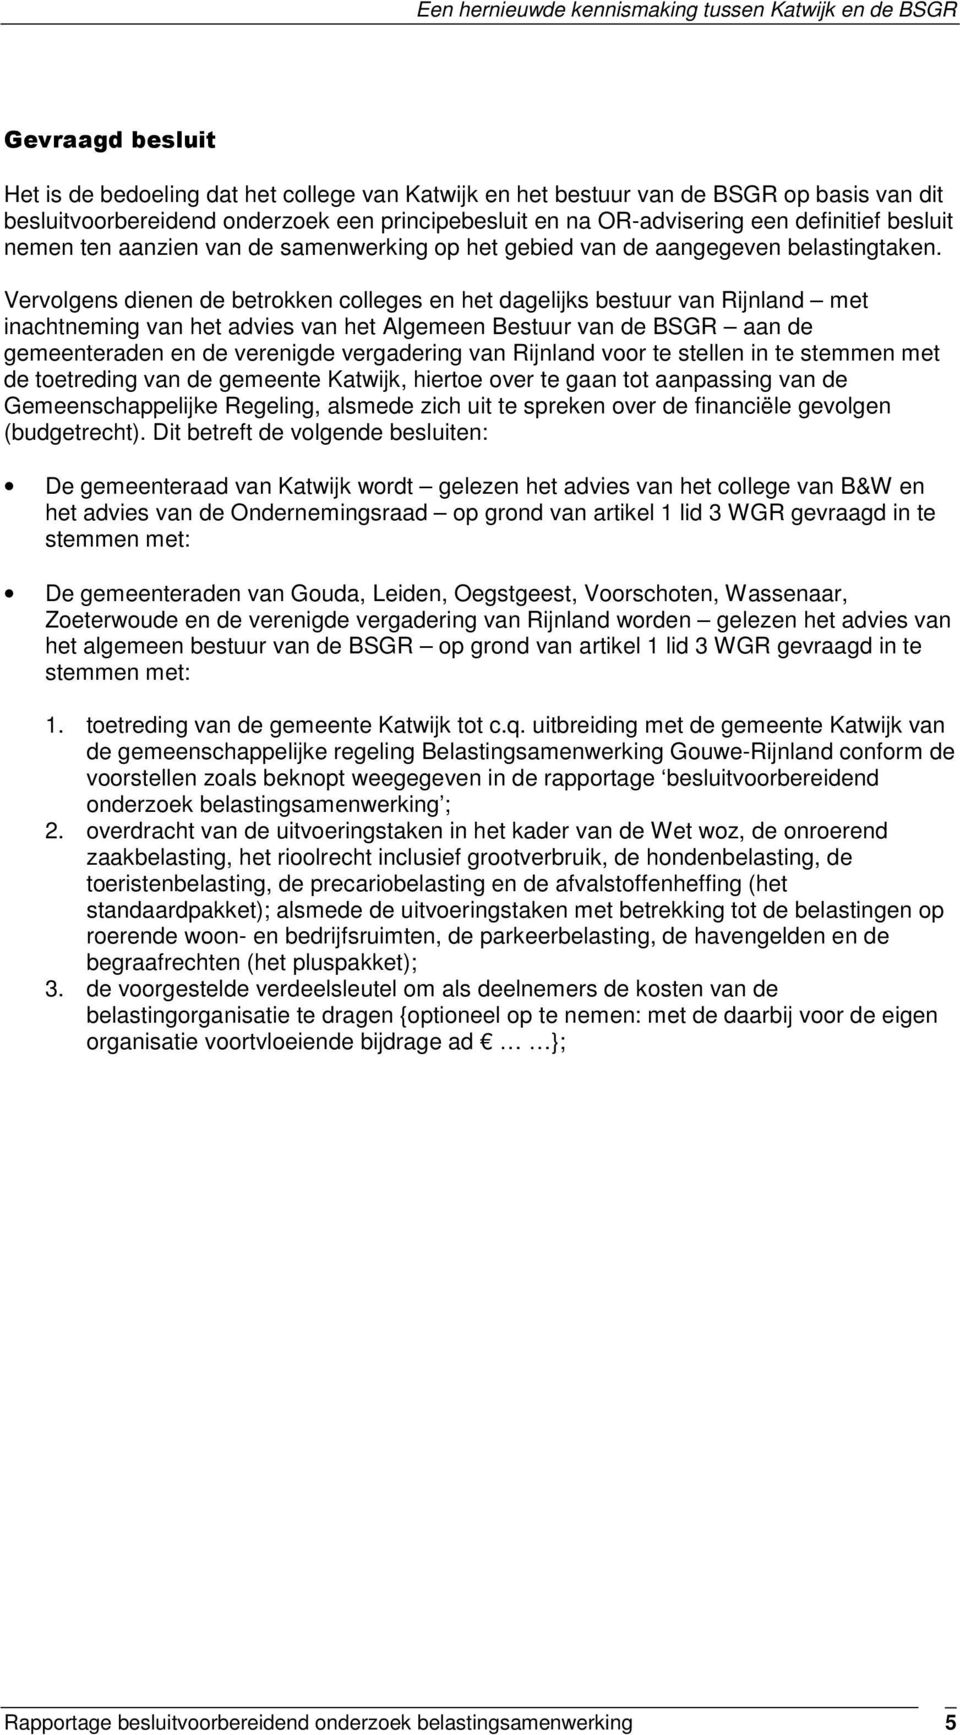 Vervolgens dienen de betrokken colleges en het dagelijks bestuur van Rijnland met inachtneming van het advies van het Algemeen Bestuur van de BSGR aan de gemeenteraden en de verenigde vergadering van